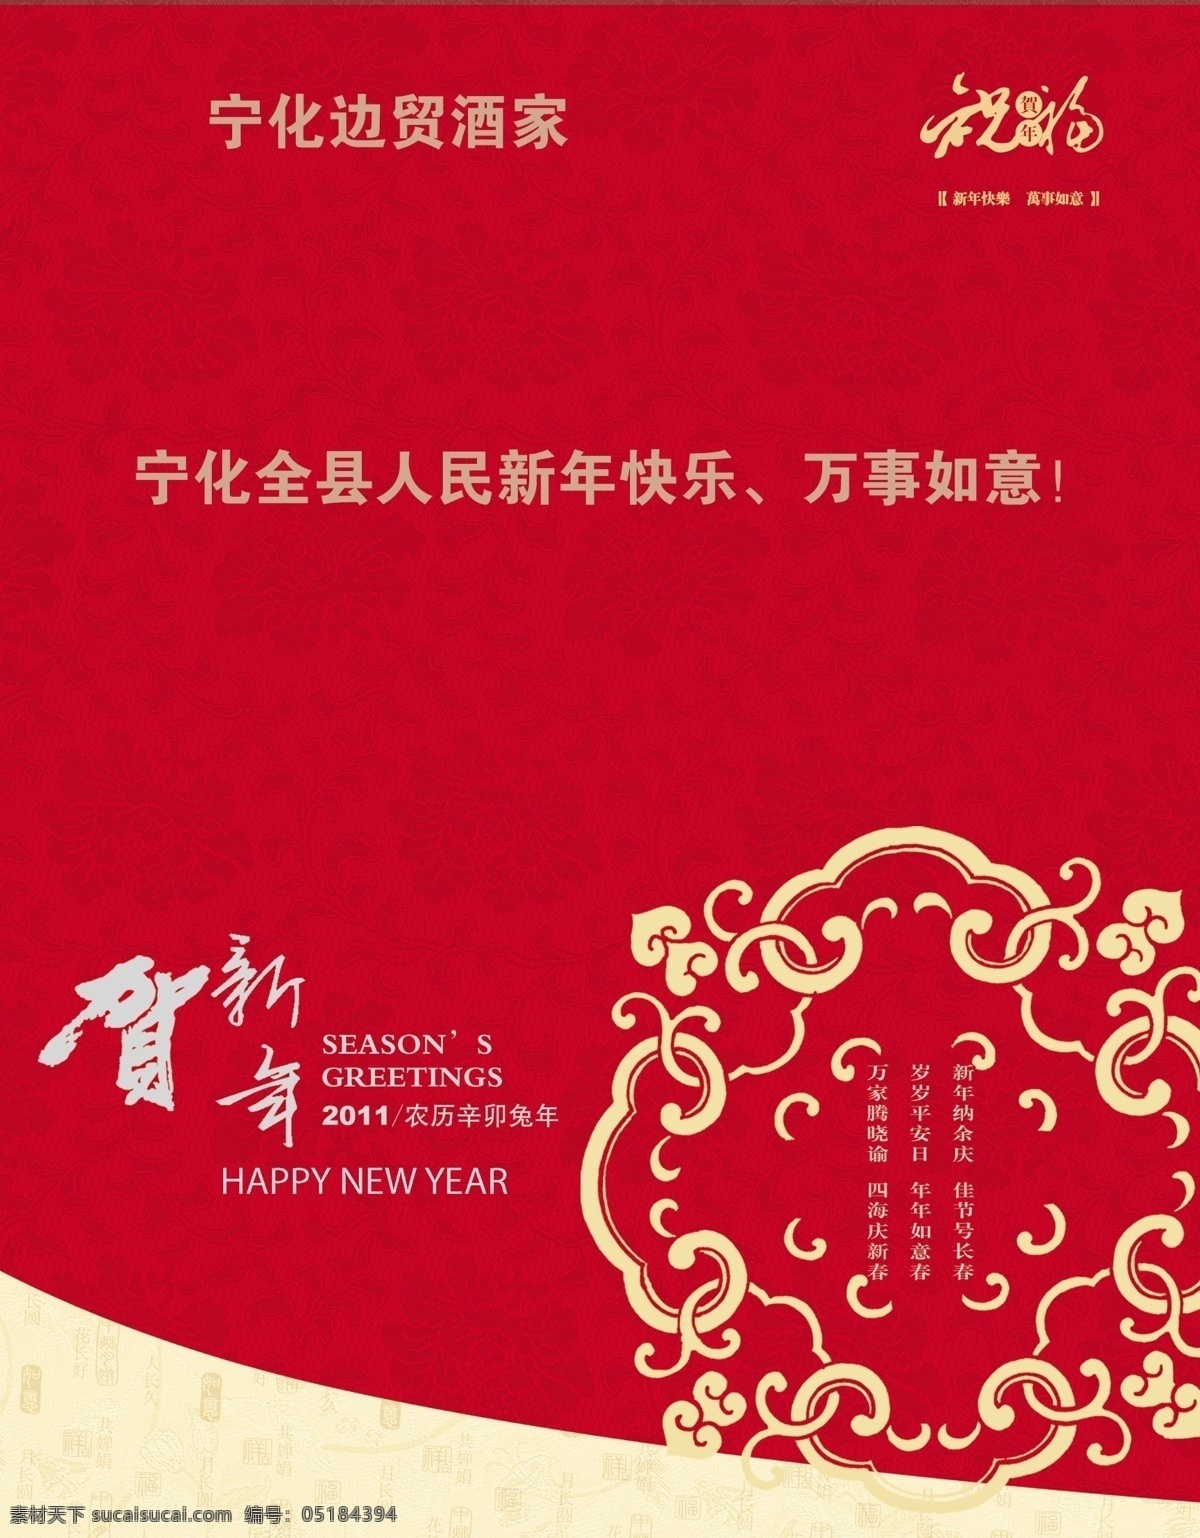 喜庆 图样 版 古典花纹 广告设计模板 其他模版 艺术字 源文件 中国元素 喜庆图样版 大红底图